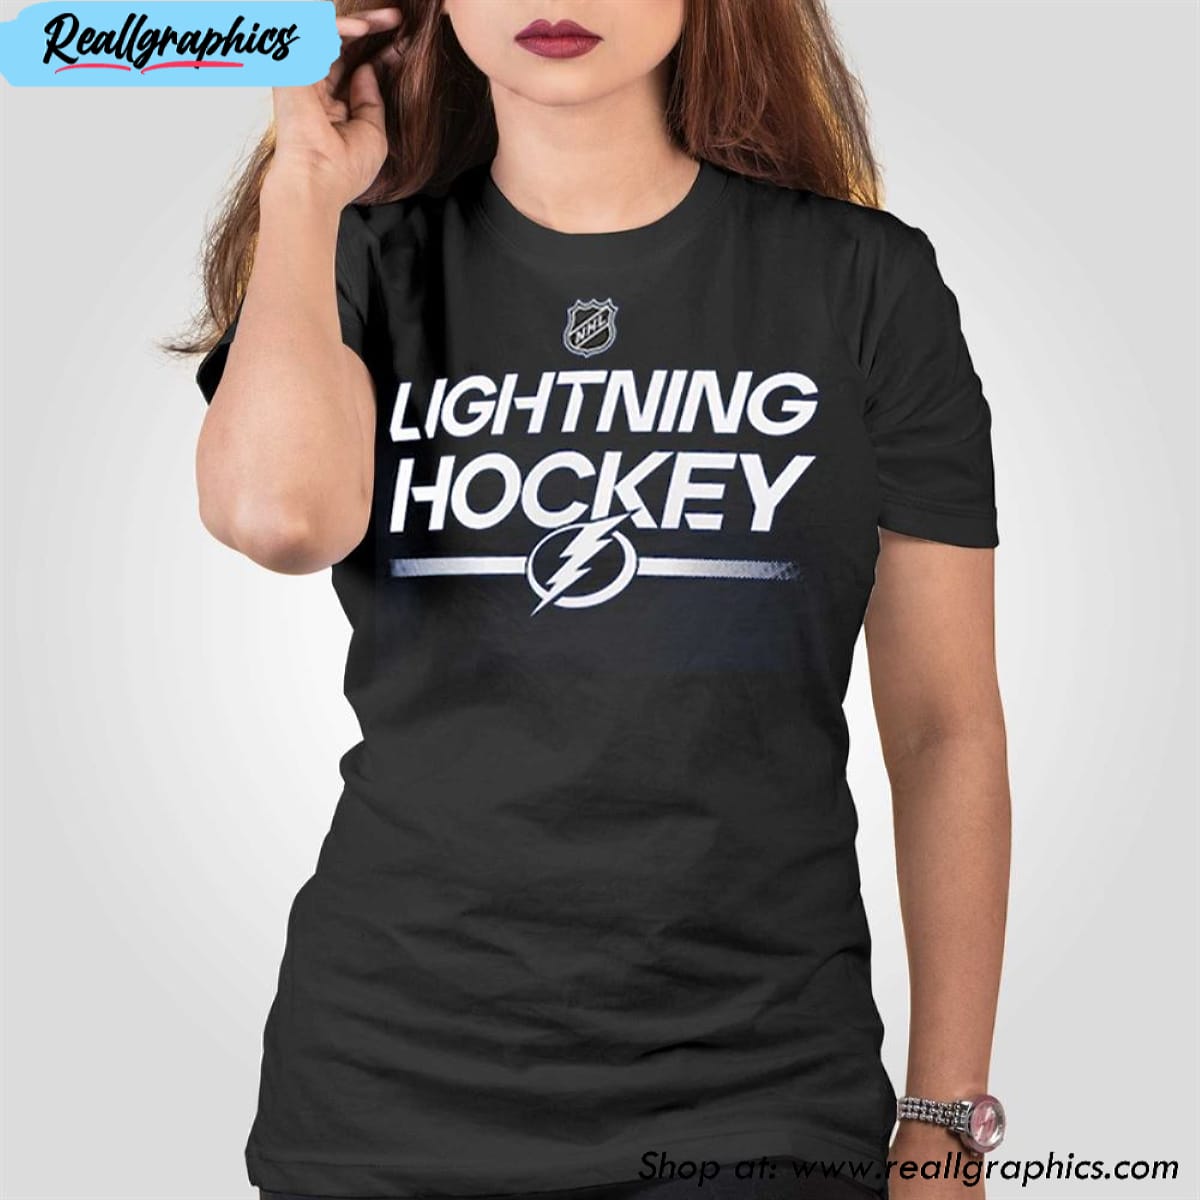 Tampa Bay Lightning Gear, Jerseys, Store, Pro Shop, Hockey Apparel